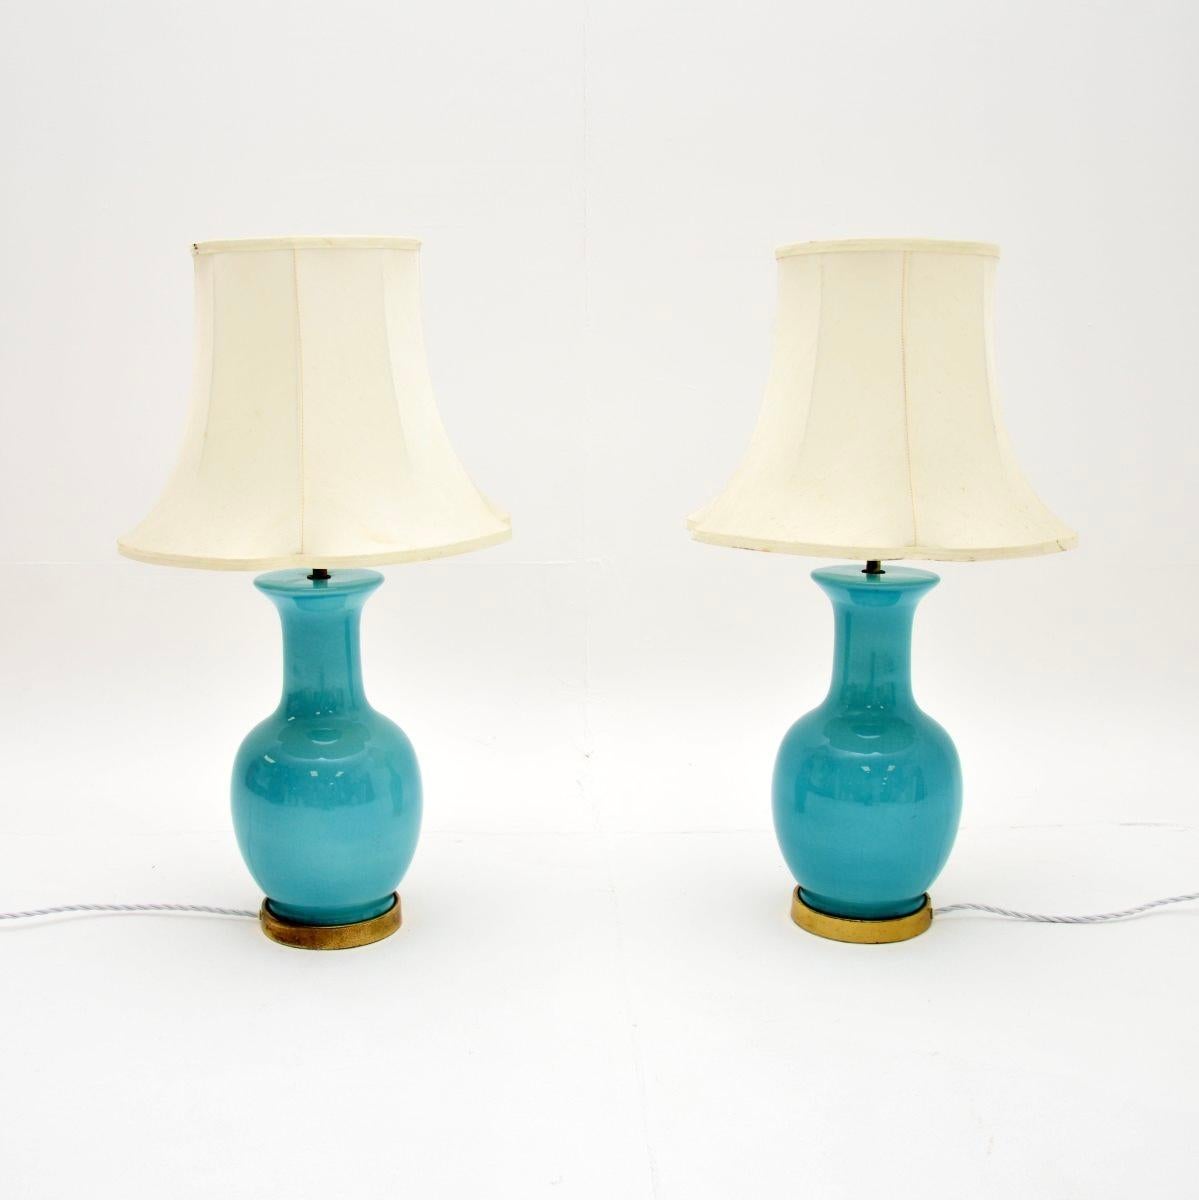 Une superbe paire de lampes de table vintage en céramique et laiton. Ils ont été fabriqués en Angleterre et datent des années 1960.

La céramique est de la plus belle nuance de bleu turquoise, accentuée par une bordure en laiton autour du bord